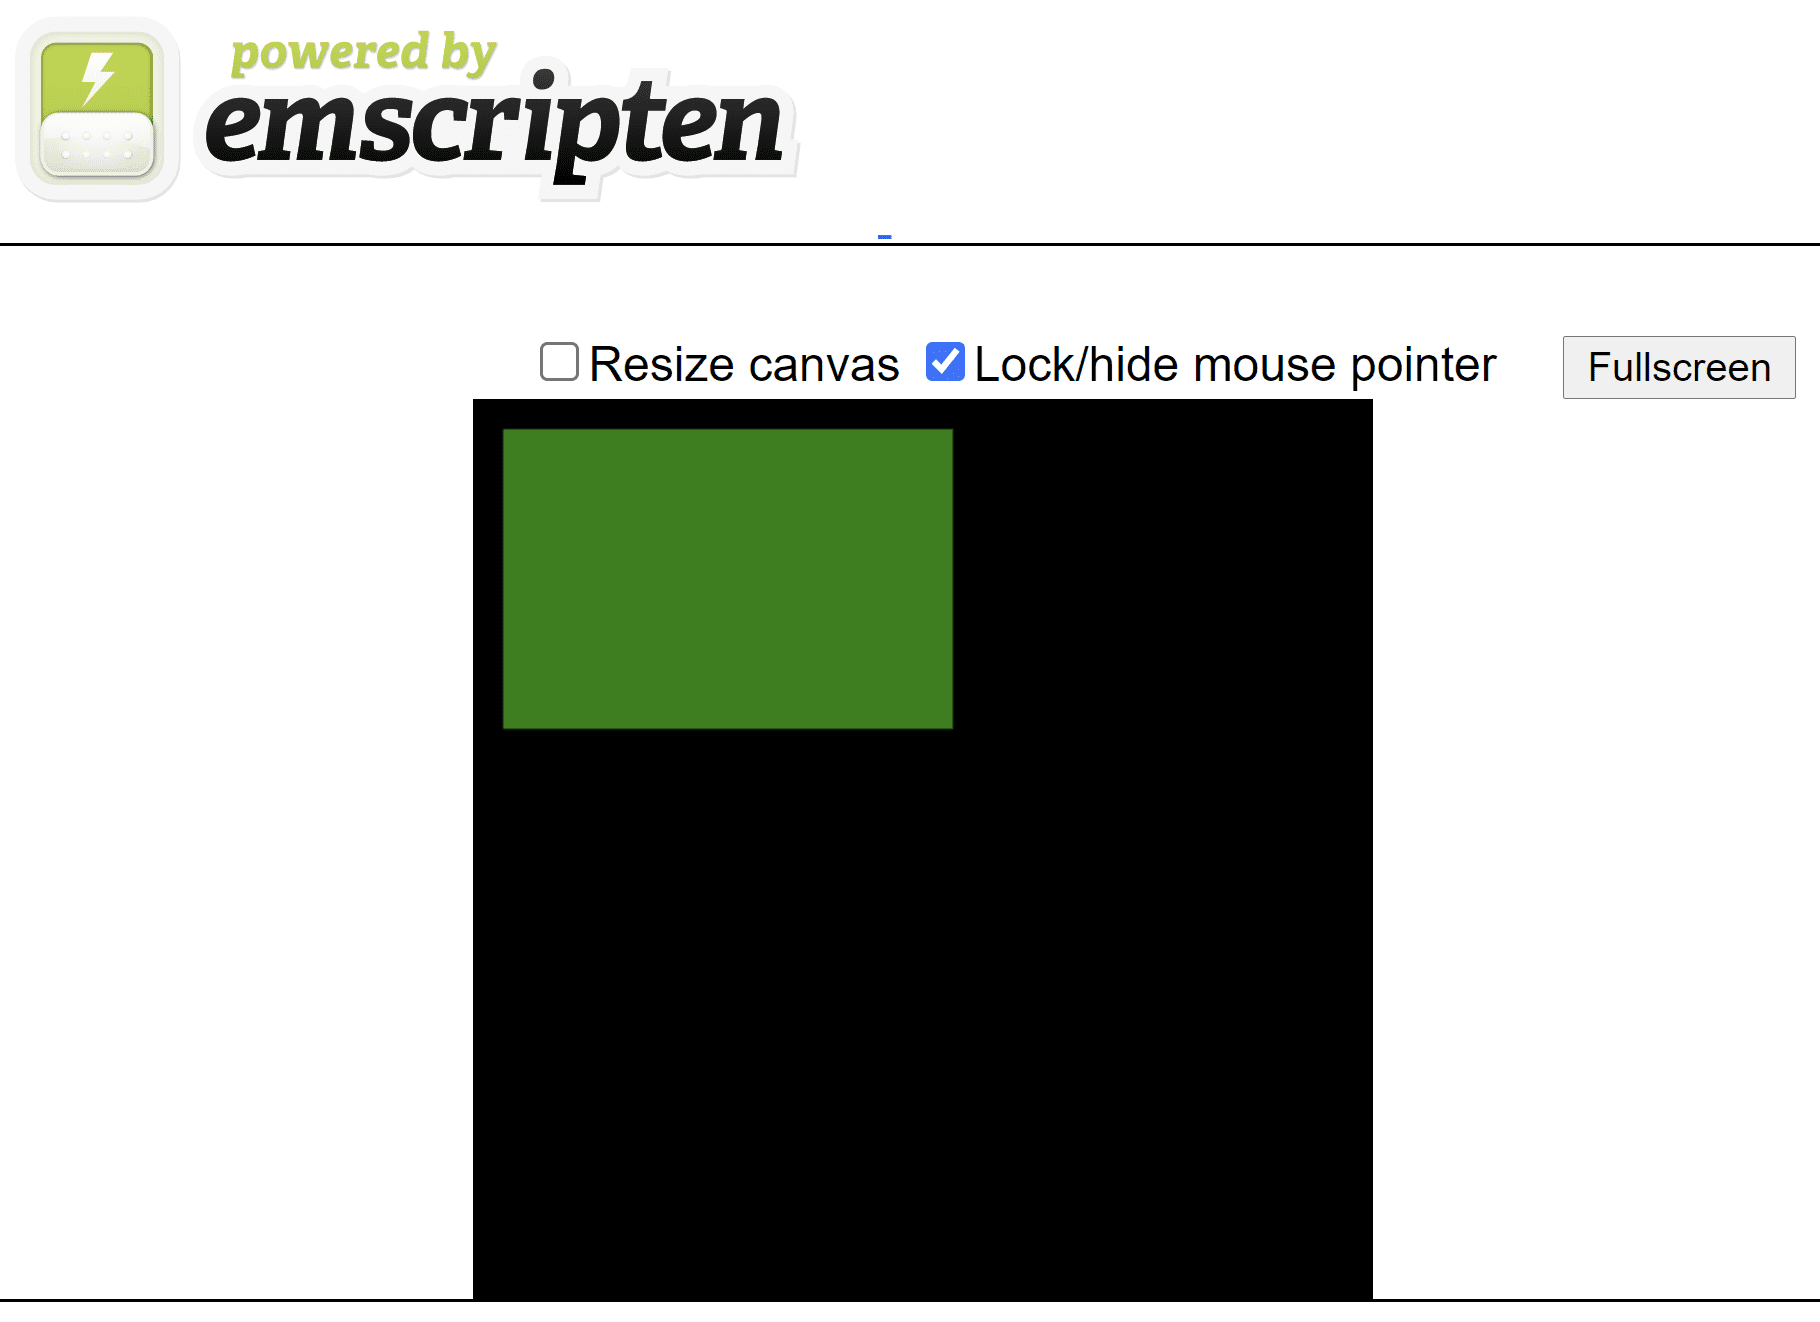 Trang HTML được tạo mô tả hiển thị một hình chữ nhật màu xanh lục trên canvas hình vuông màu đen.